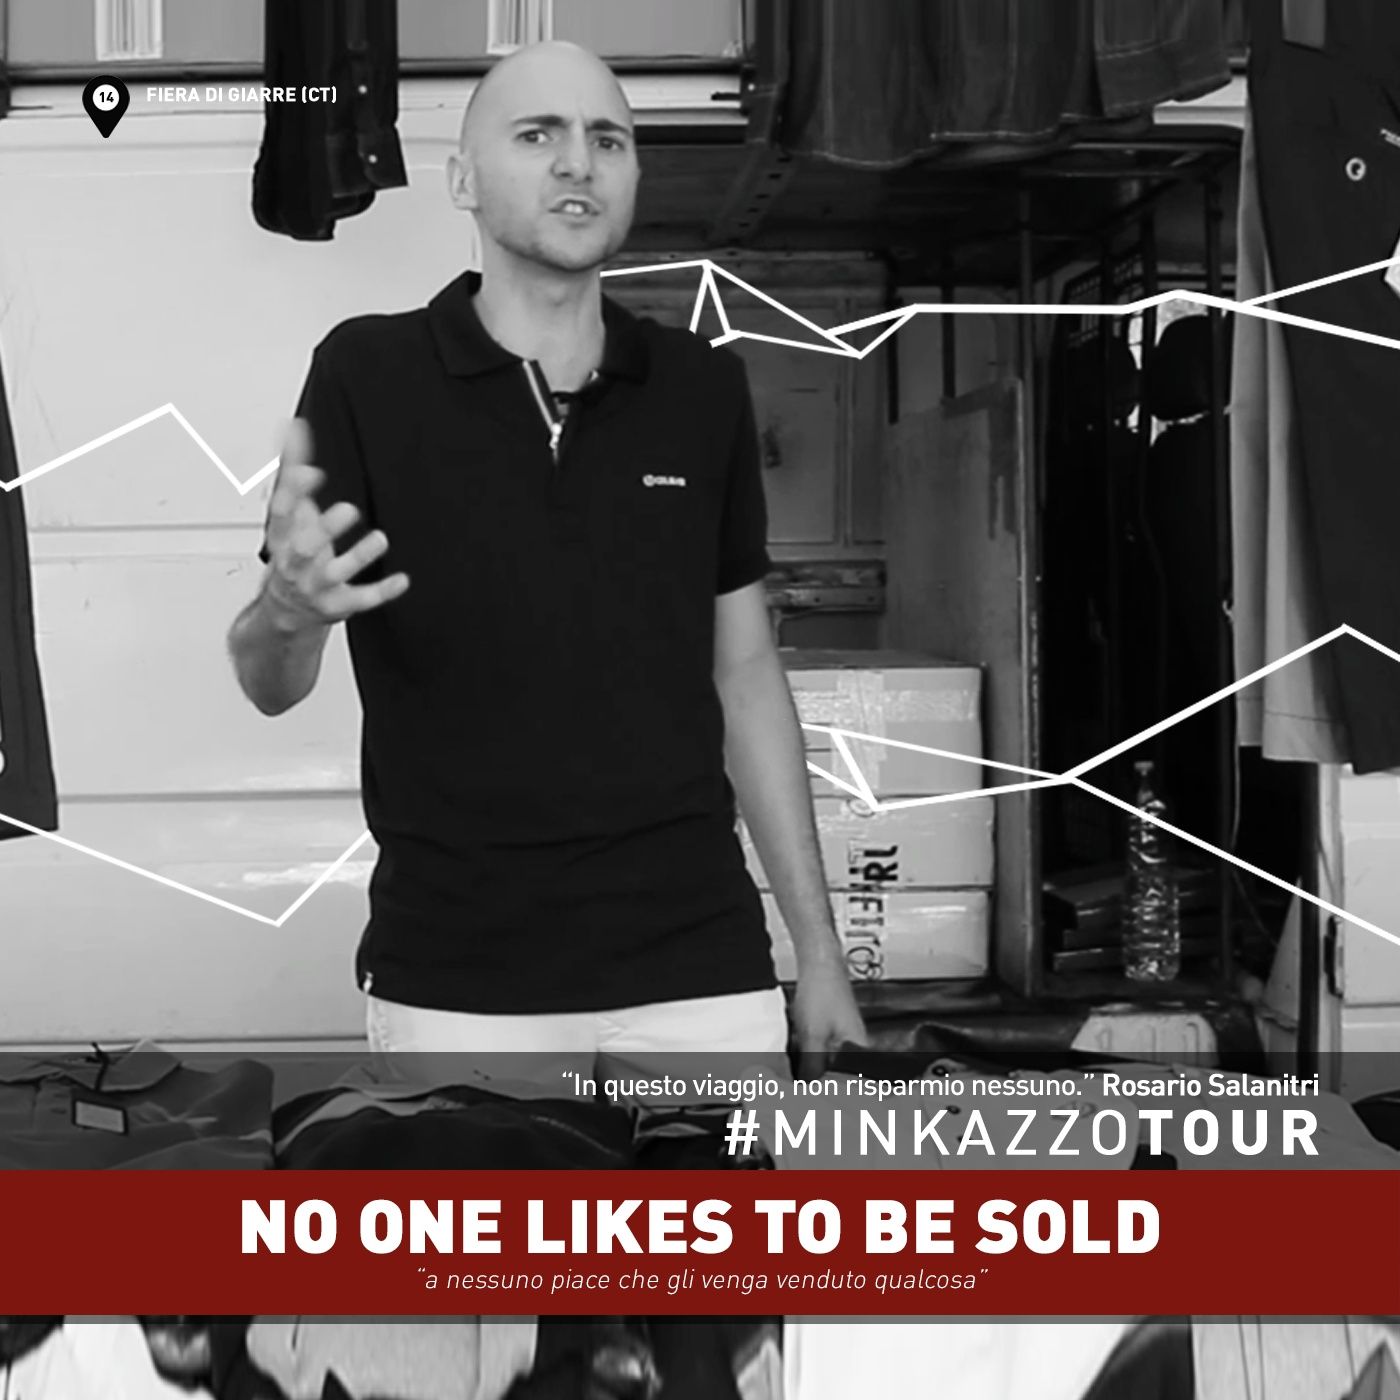 #014 - no one likes to be sold - PENSACI. #MINKAZZOTOUR